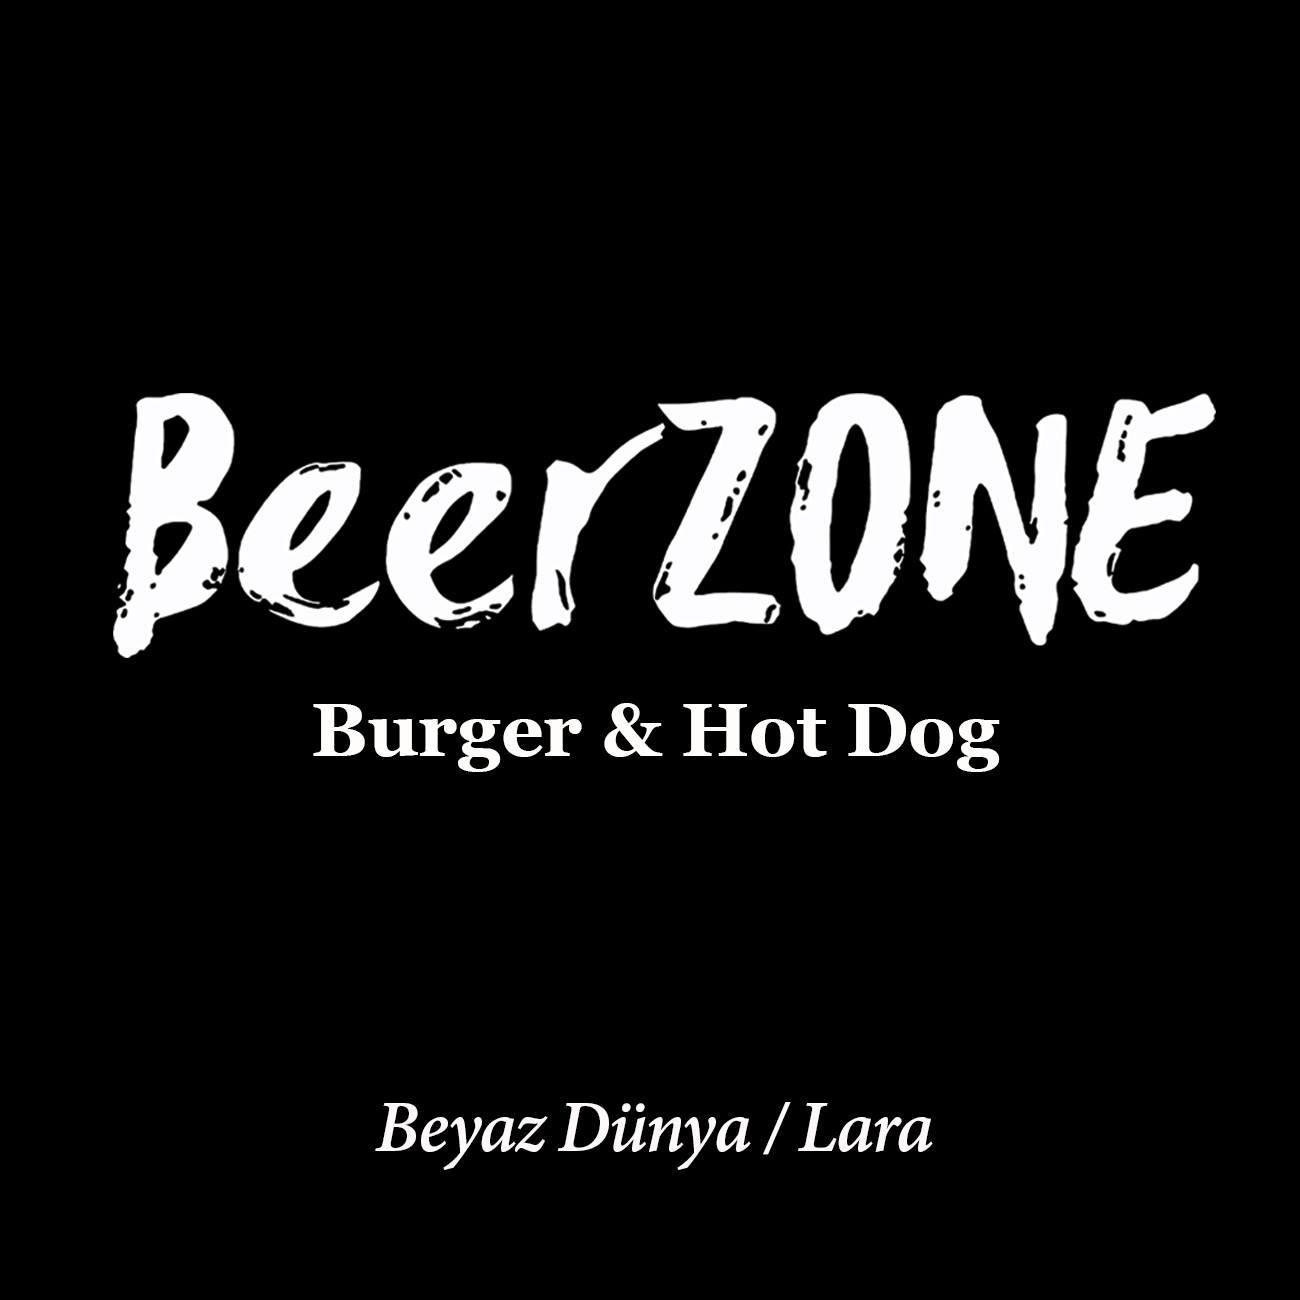 Beerzone logo